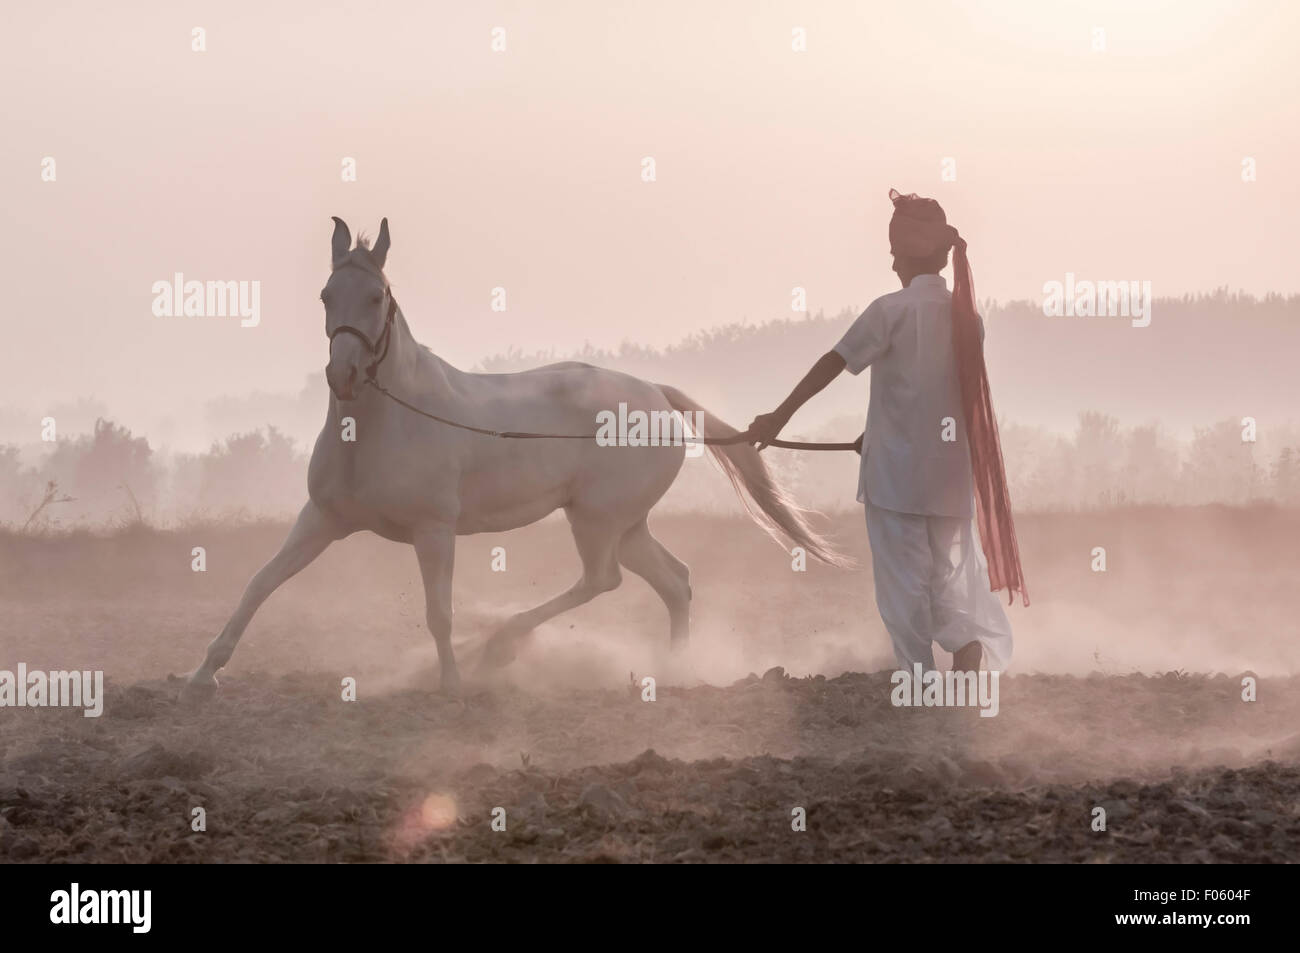 Formation indien son beau cheval Marwari blanc à l'aube sur une ferme dans la brume Banque D'Images